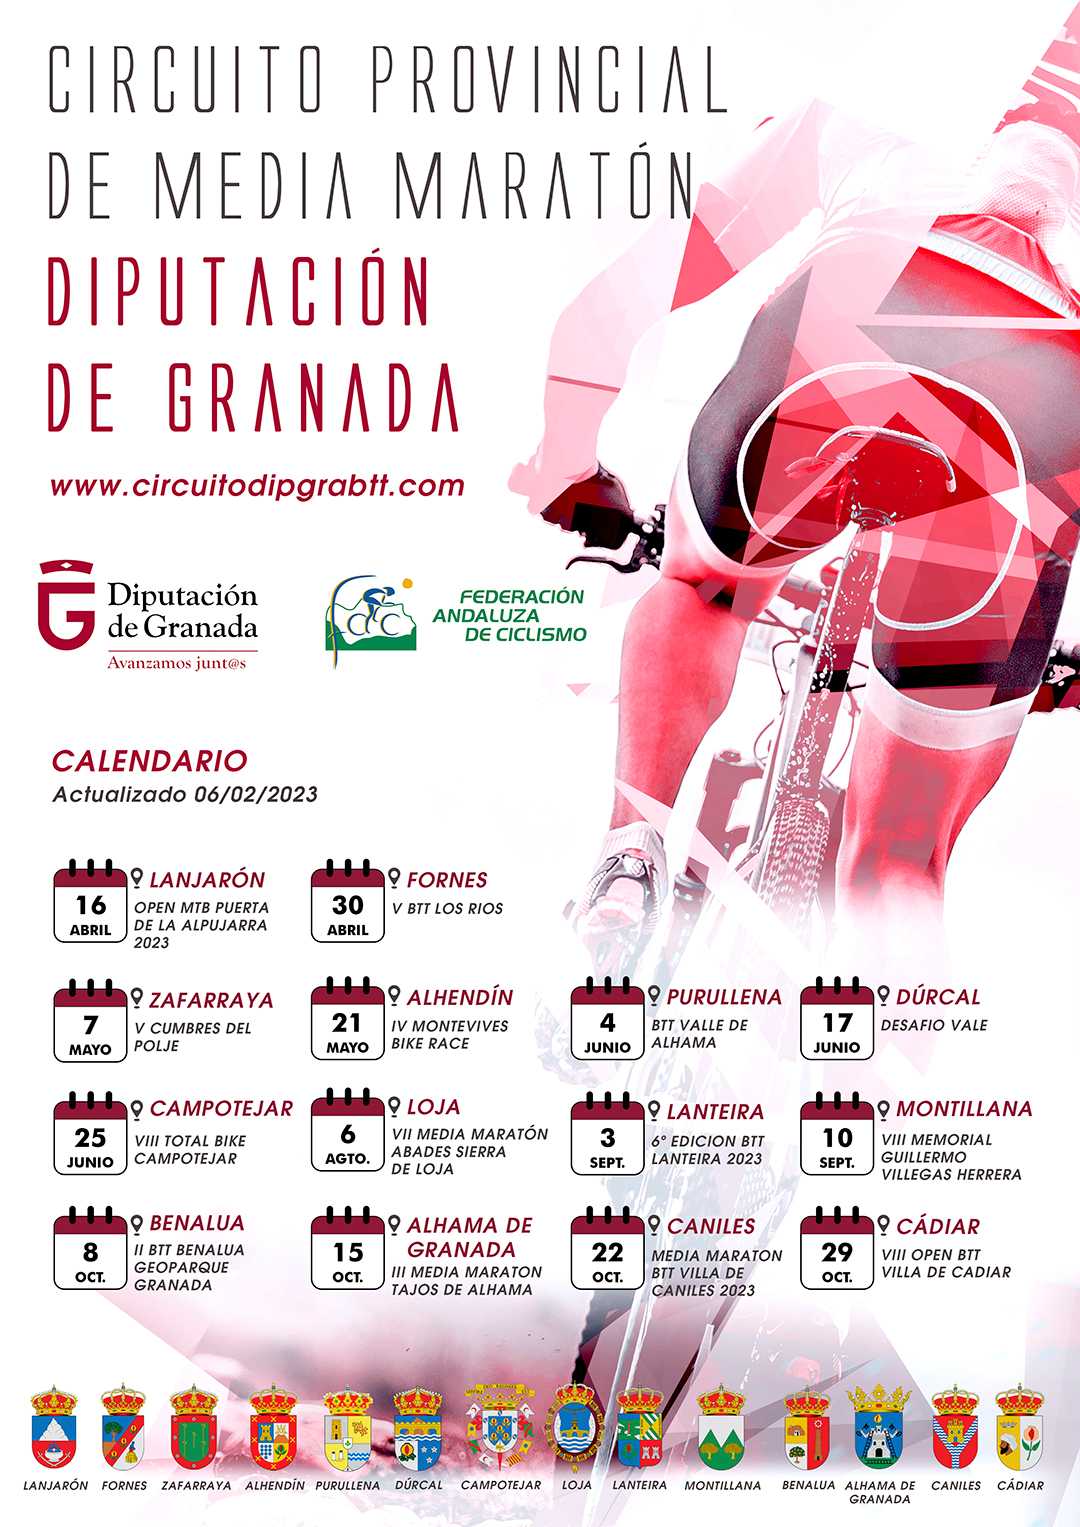 El Circuito Provincial de Media Maratón Diputación de Granada 2023 arrancará en Lanjarón